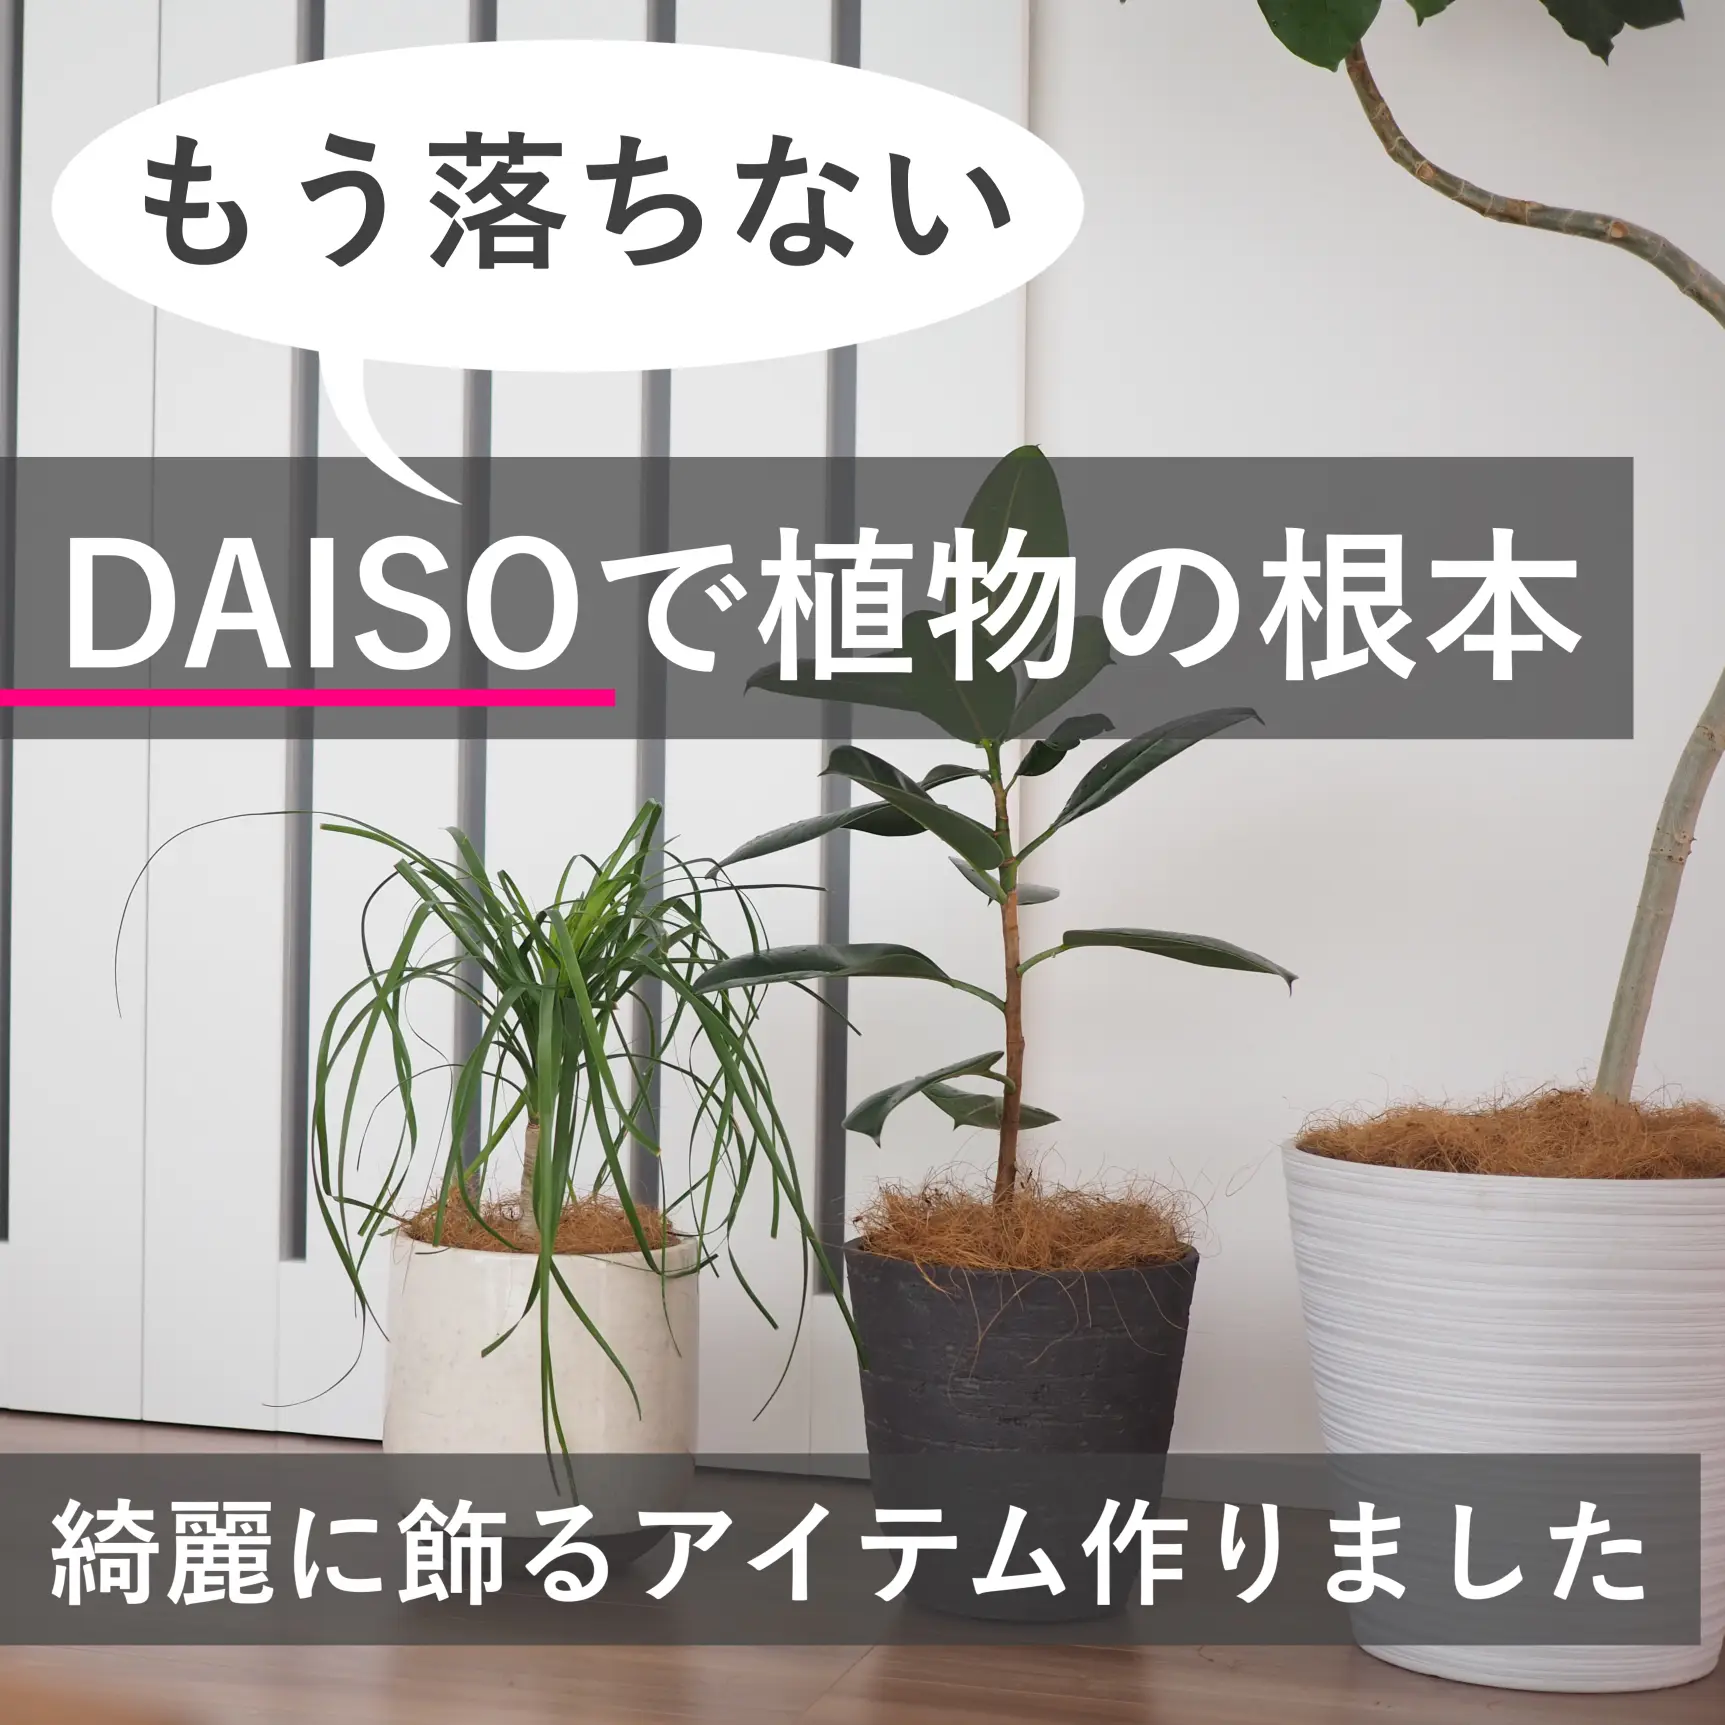 Daiso ココヤシファイバーが落ちない方法 ムーンmoon Ismartが投稿したフォトブック Lemon8